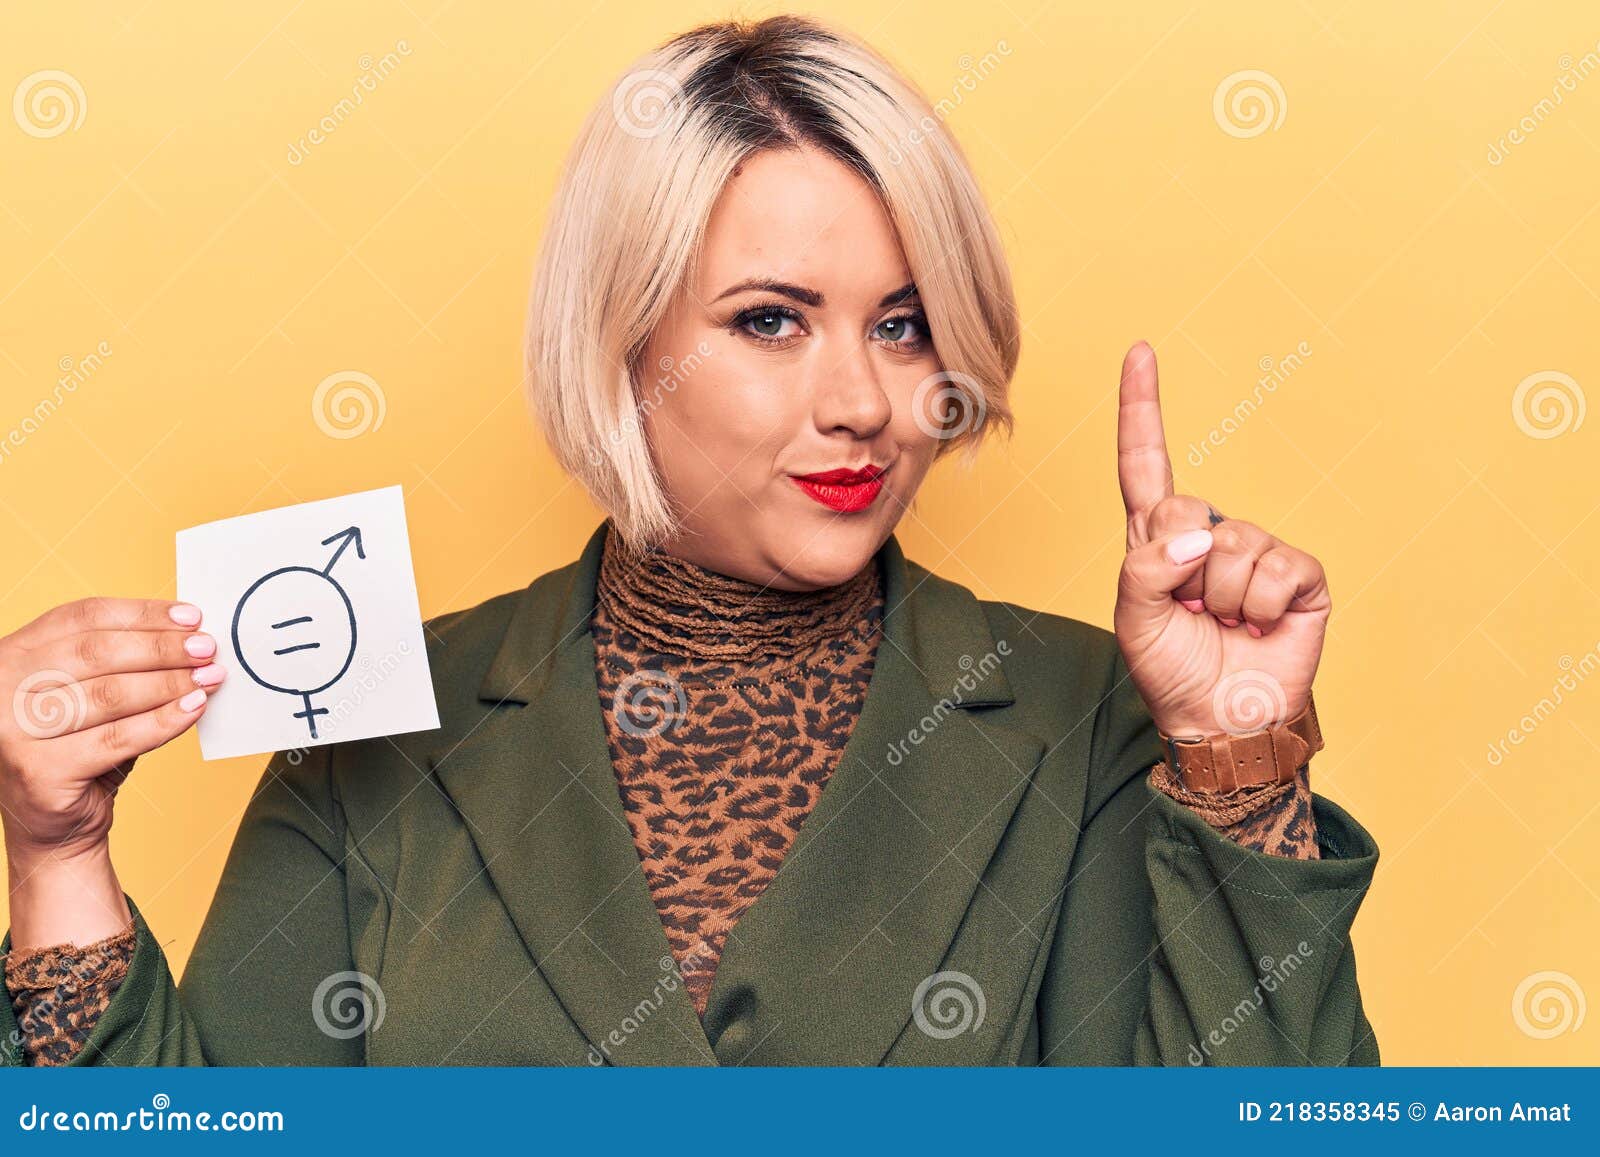 Rubia Talla Grande Mujer Pidiendo Igualdad De Sexo Sujetando Papel Con Mensaje De Igualdad De Género Sonriendo Con Una Idea O Preg Imagen de archivo